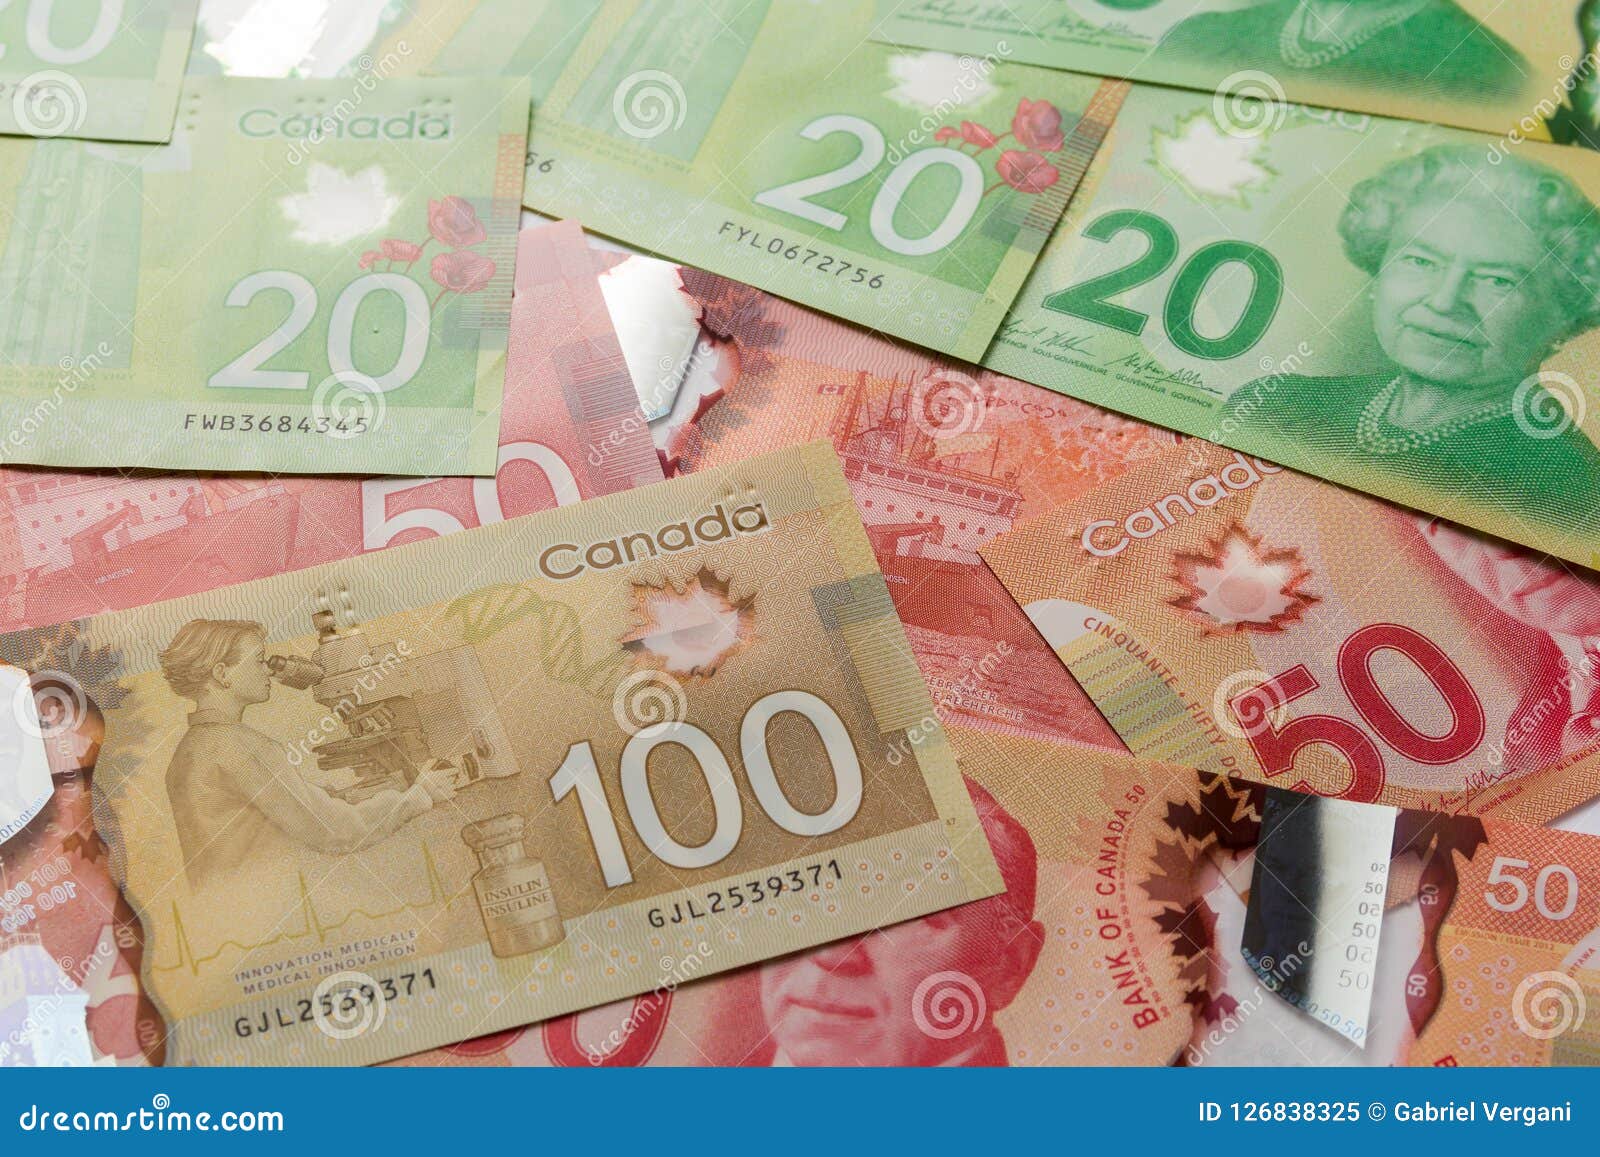 加拿大元货币/票据 编辑类库存照片. 图片 包括有 一百, 洗涤, 投资, 节省额, 票据, 货币, 编号 - 69478153